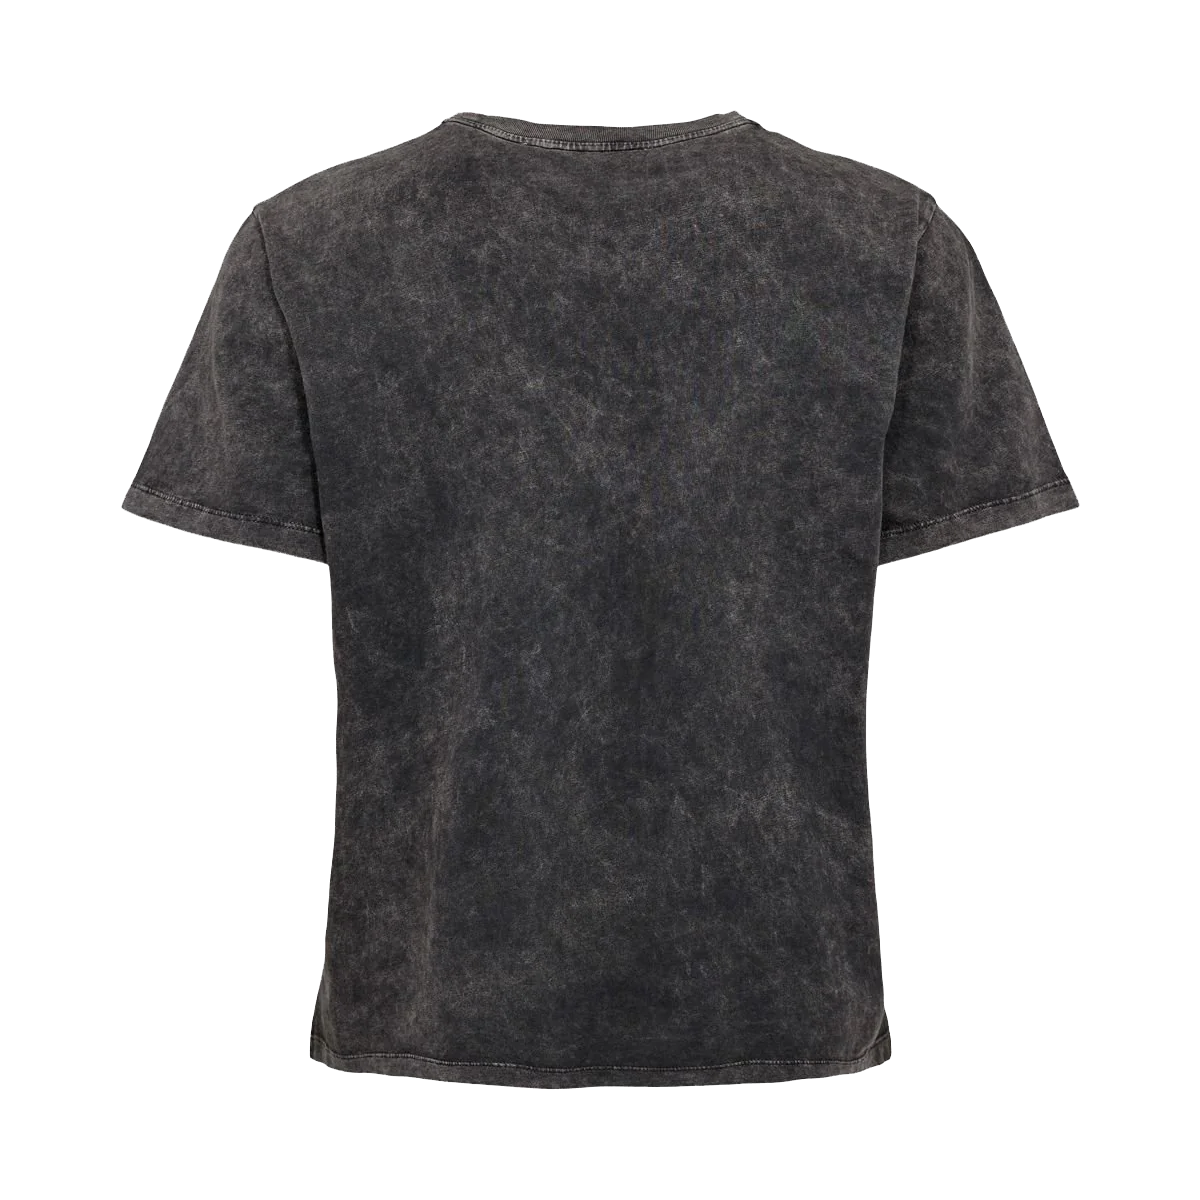 Sofie Schnoor 241409 T-shirt, Washed Black